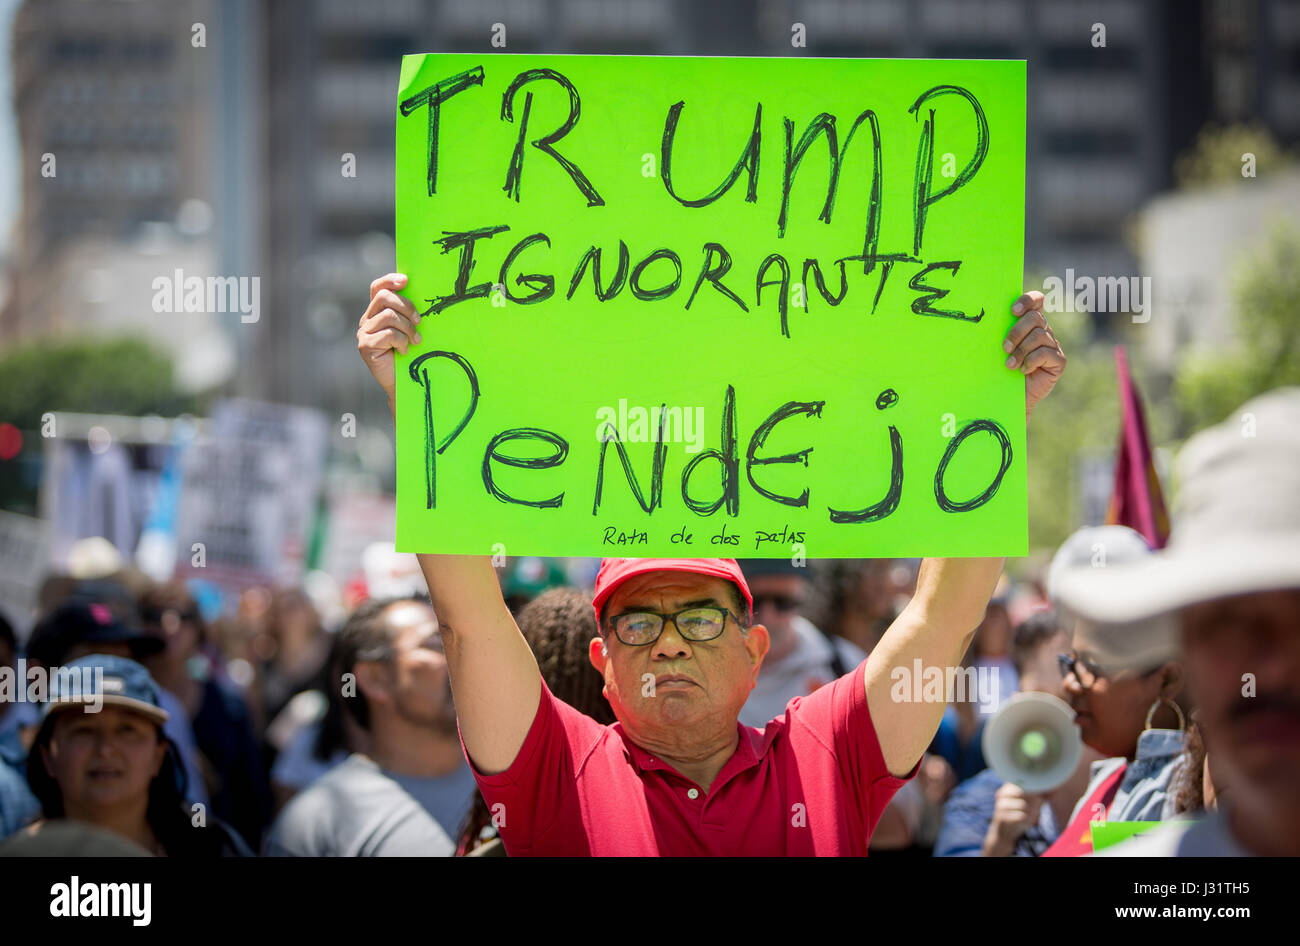 Los Angeles, Estados Unidos. El 1 de mayo de 2017. Manifestante anti Trump en mayo día del rally en el centro de Los Angeles, California, el 1 de mayo de 2017. Señal se lee "Trump Pendejo Ignorante." Crédito: Jim Newberry/Alamy Live News Foto de stock